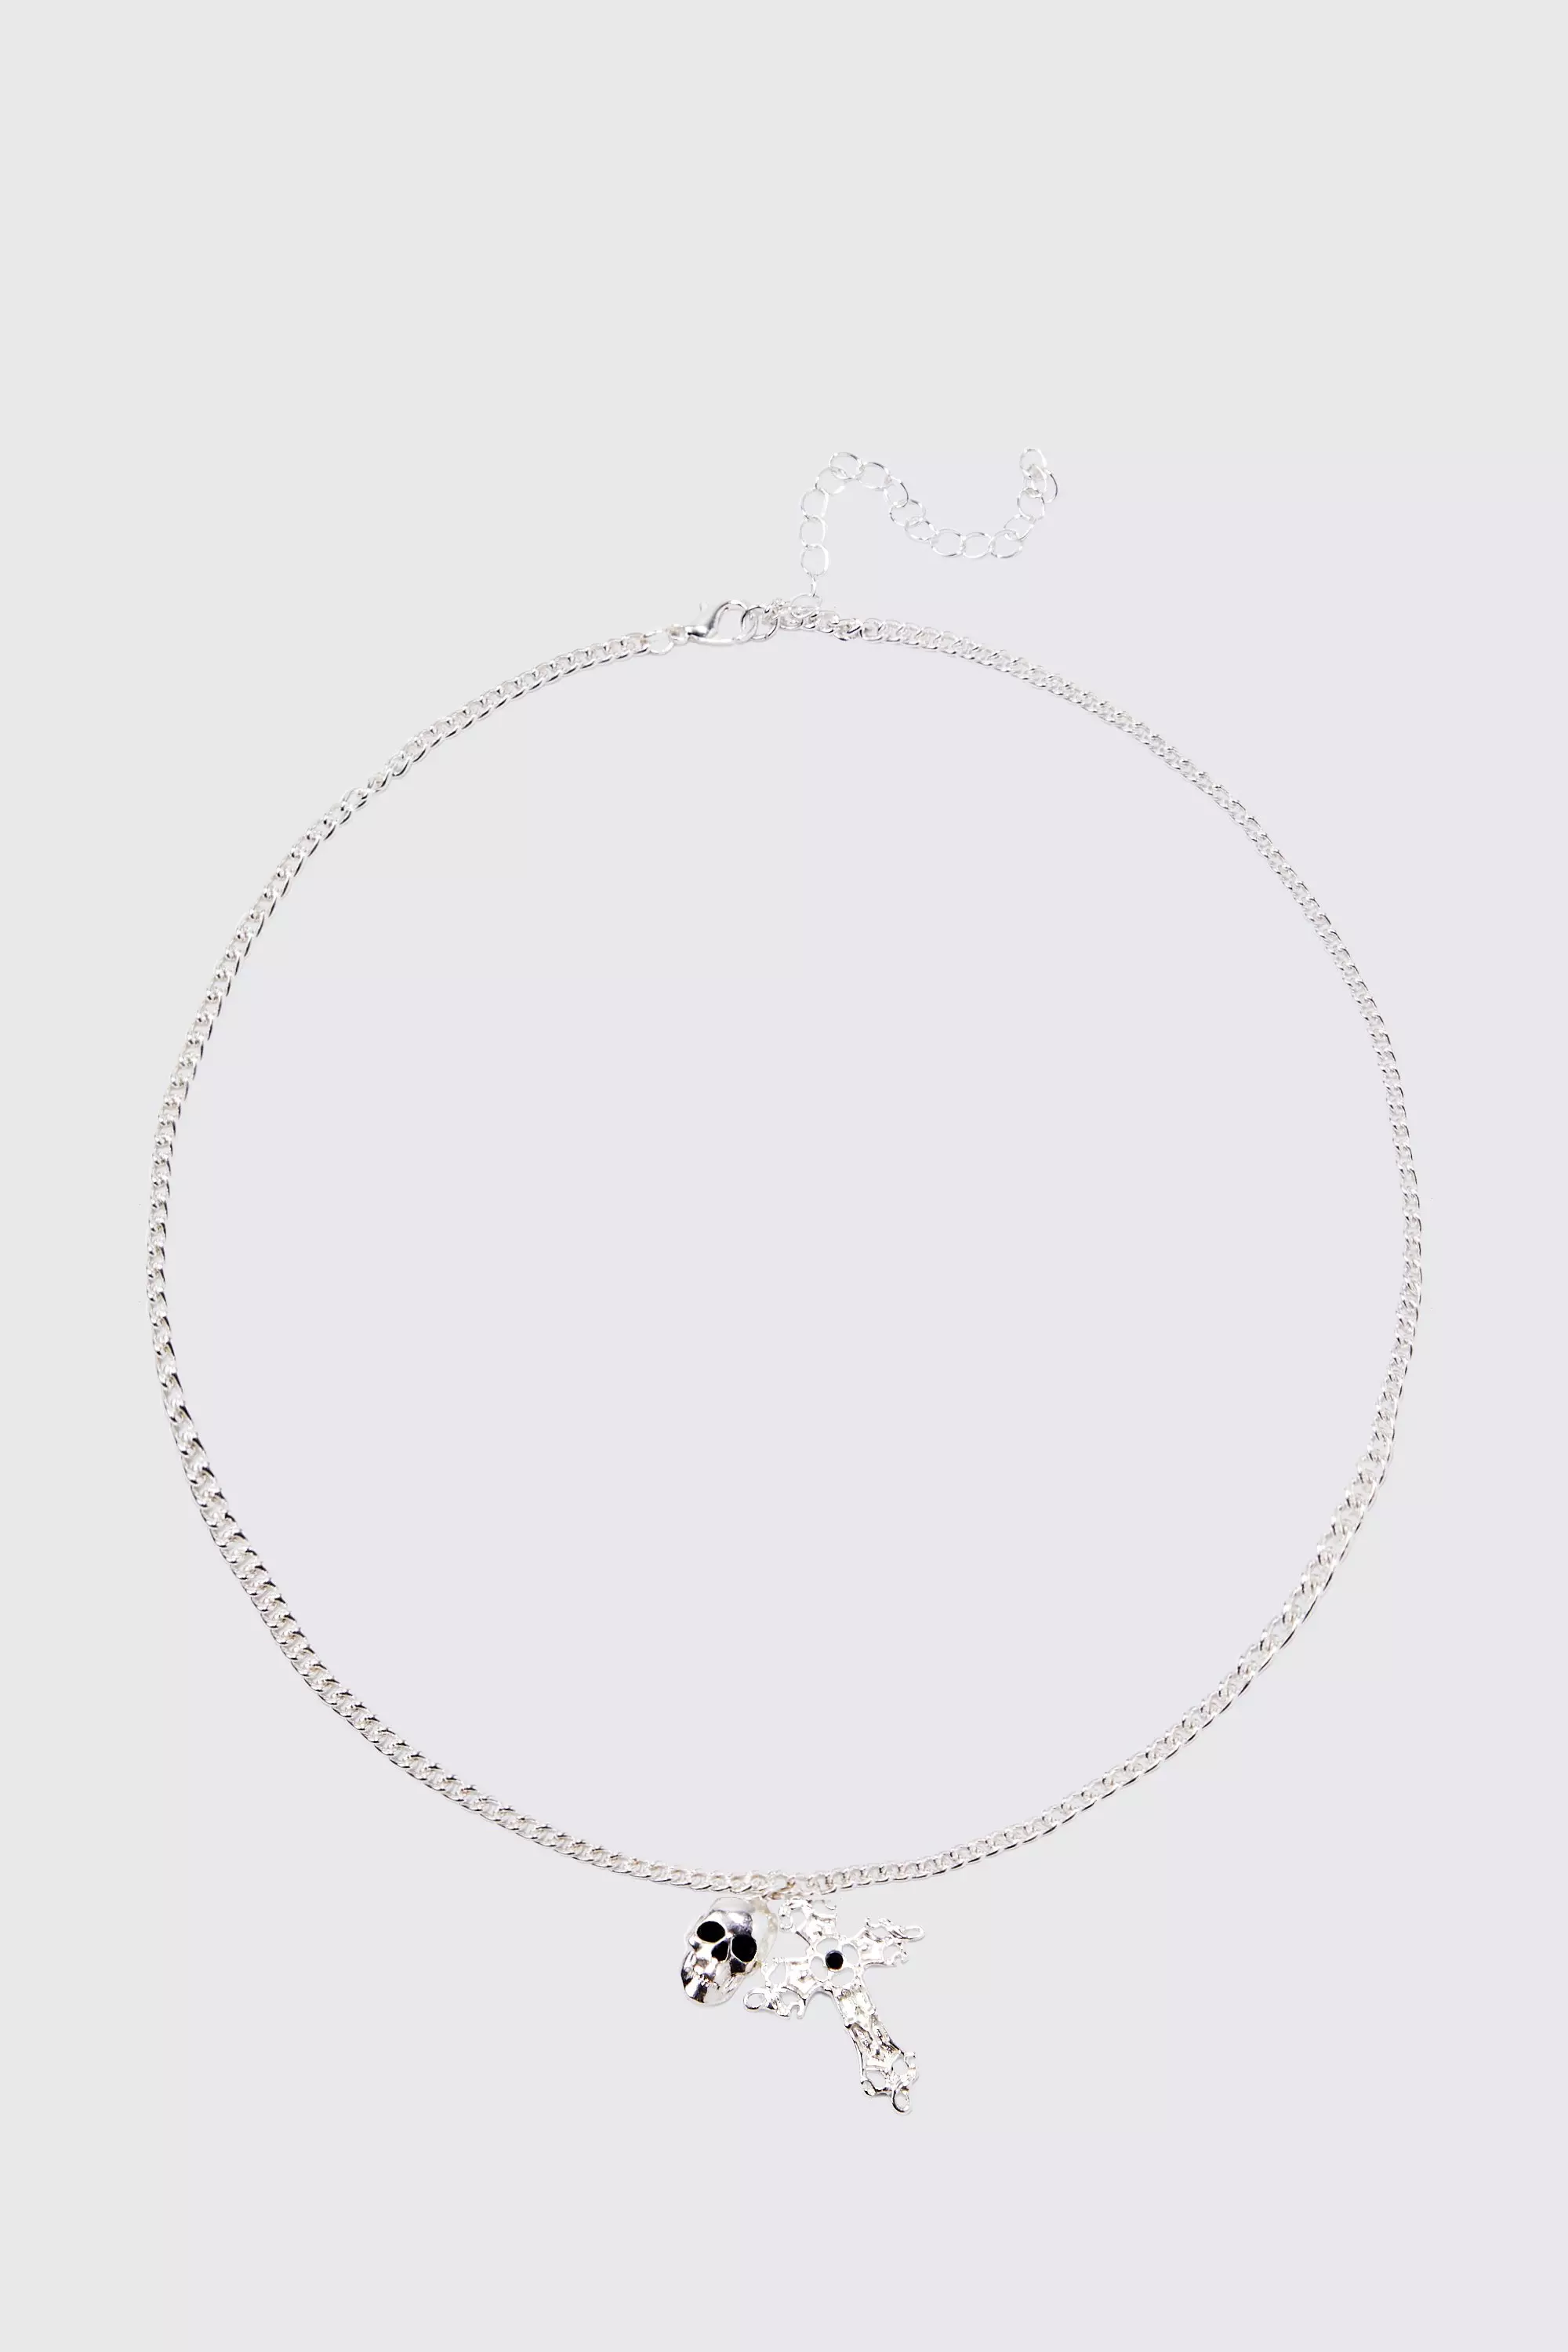 Double Pendant Detail Necklace Silver